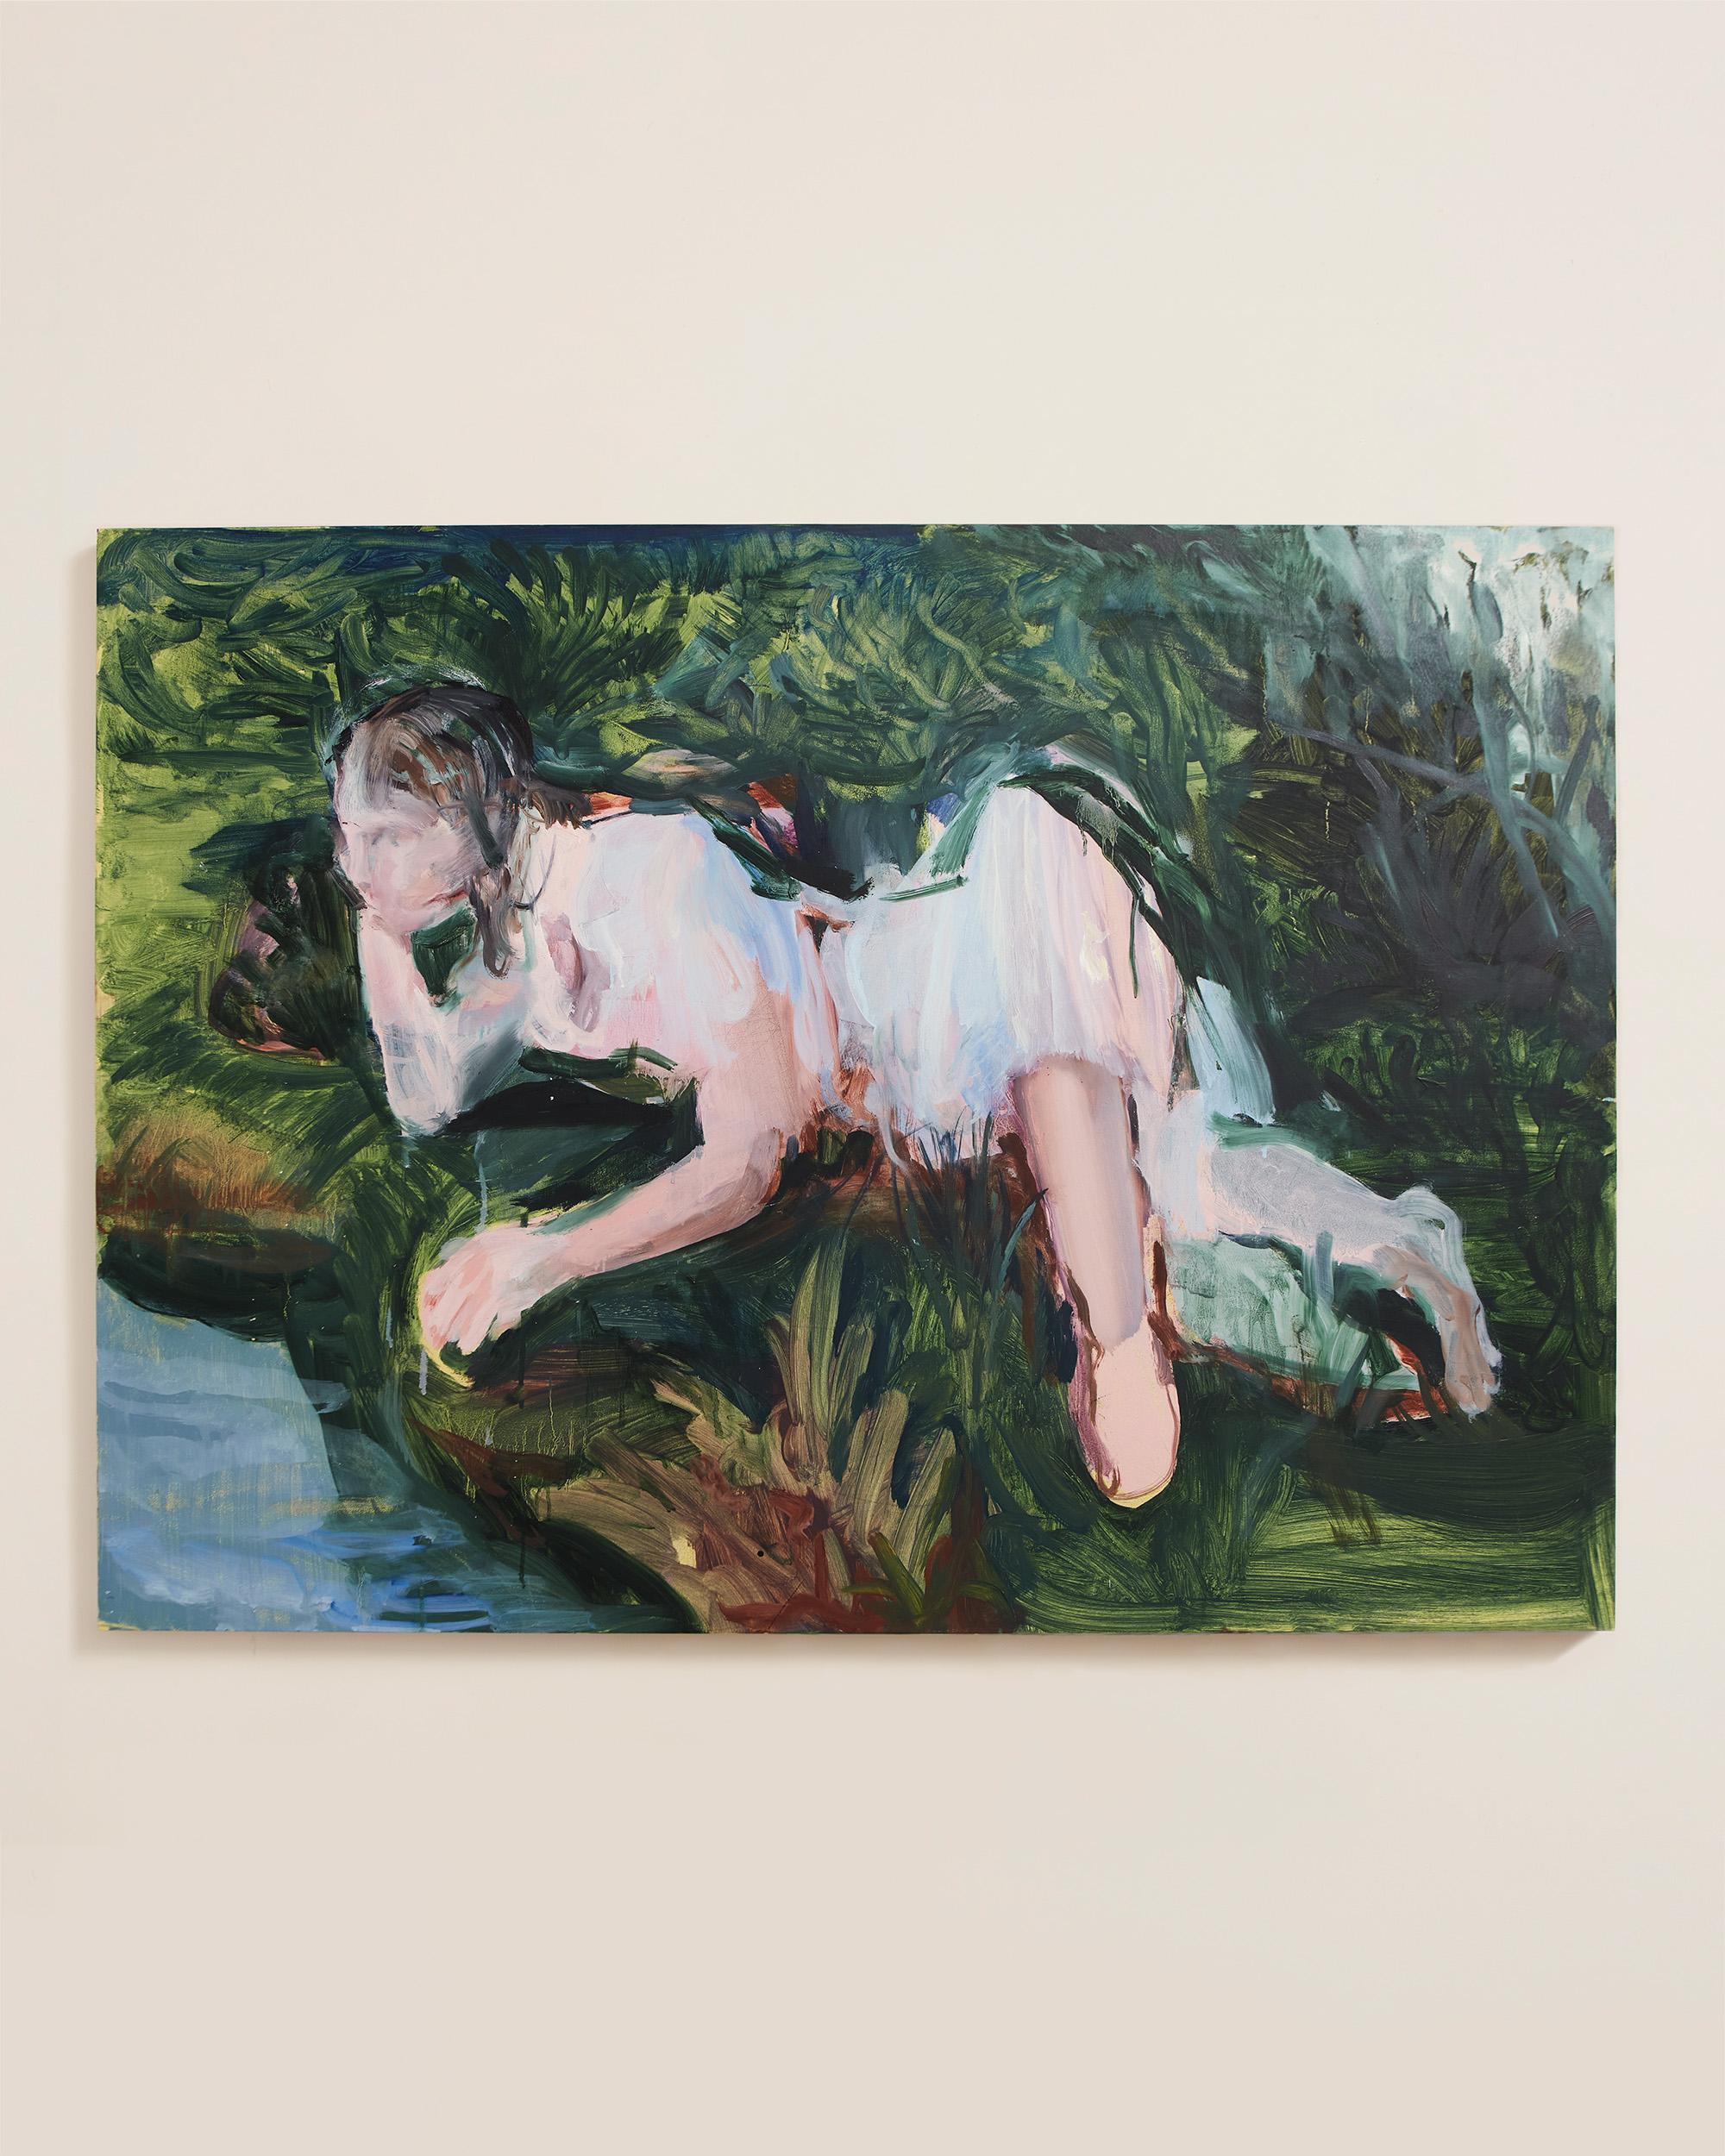 Jeune fille au bord de l'eau - Portrait contemporain à l'huile sur toile, 2018